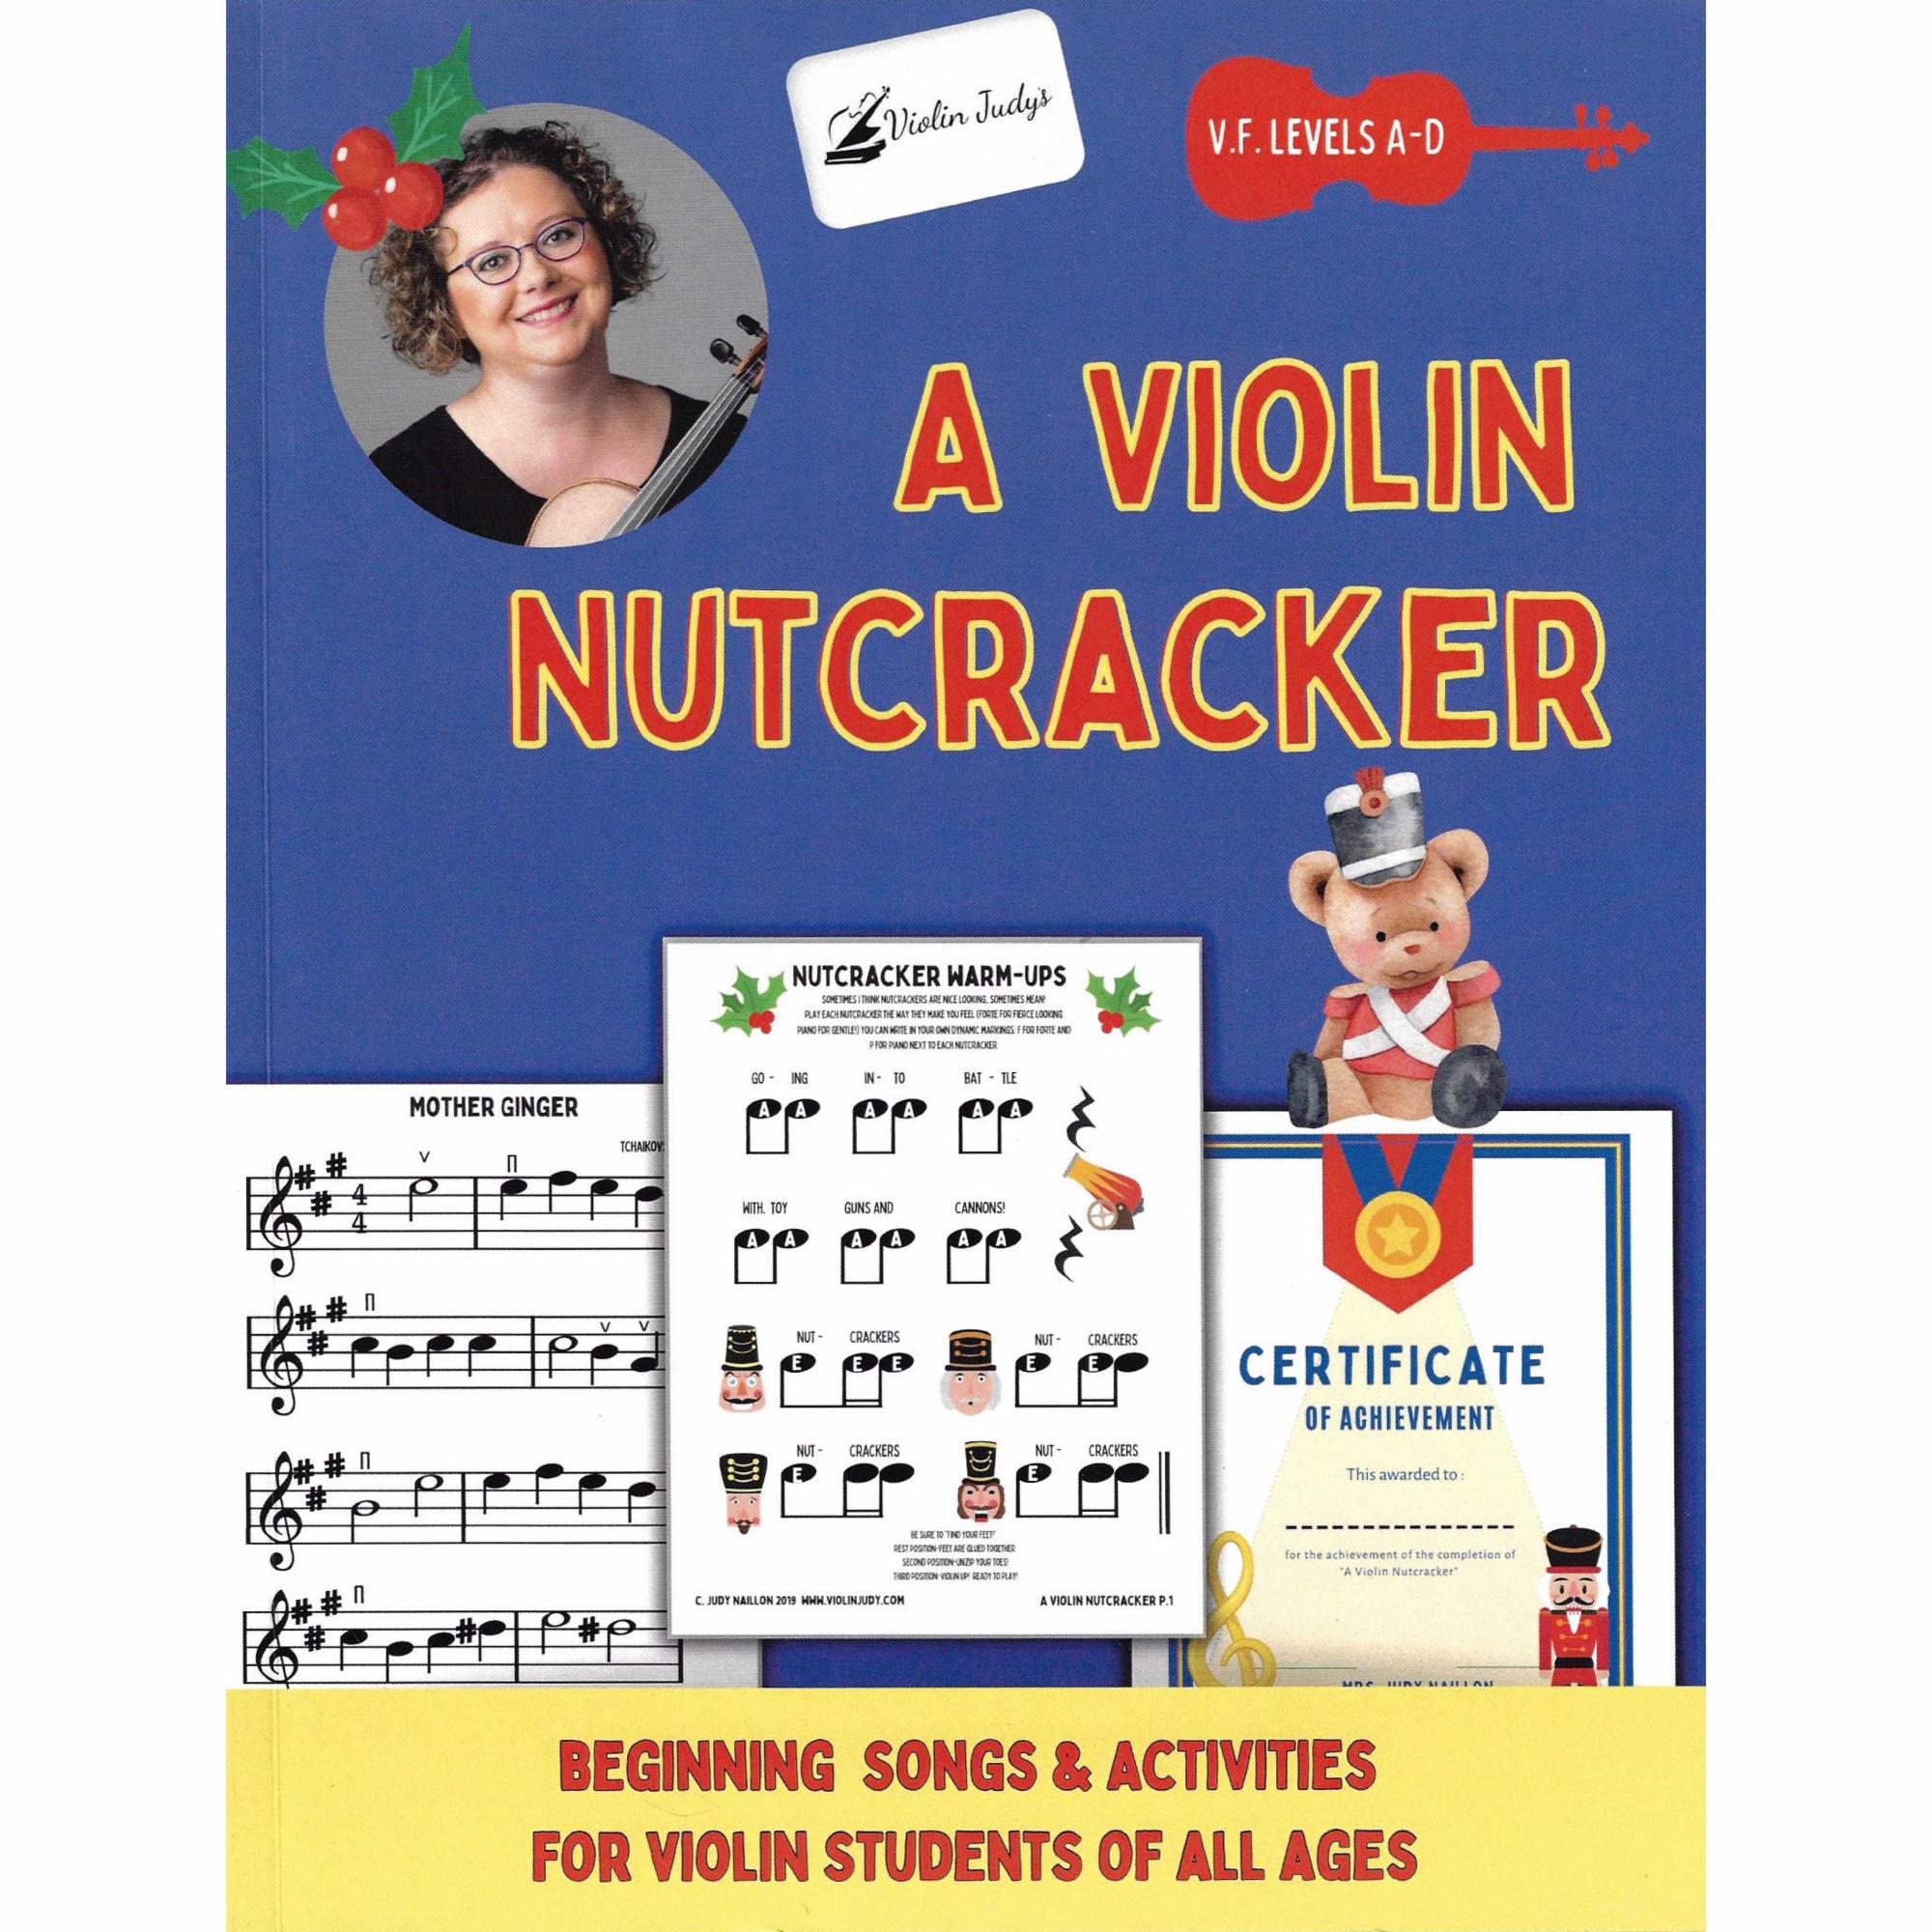 Violin Judy's A Violin Nutcracker